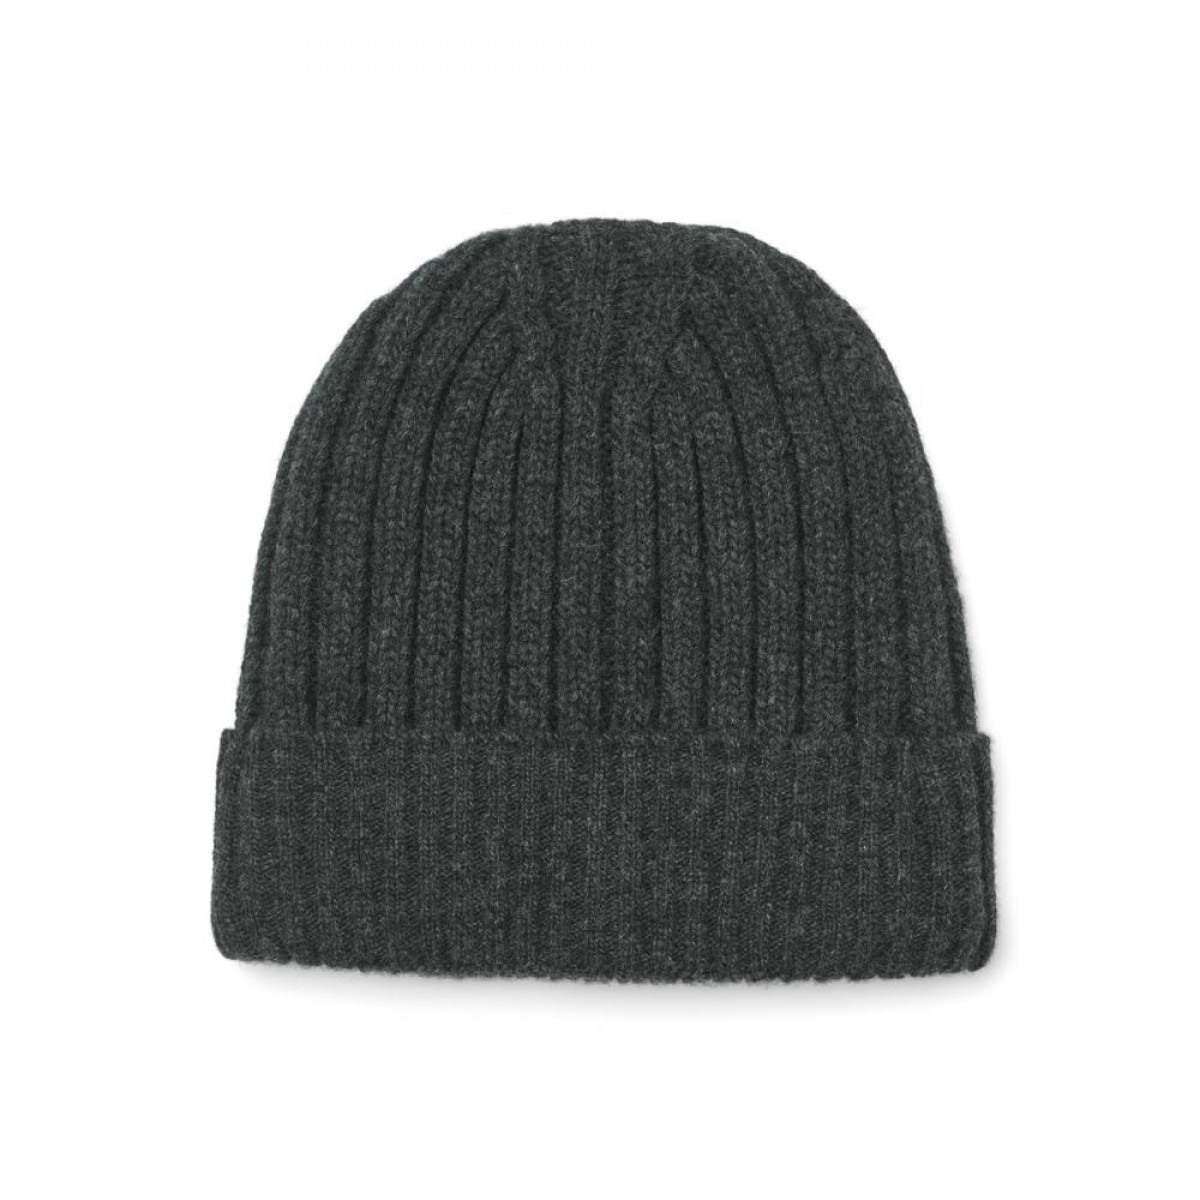 celina lambswool hat - dark grey - front